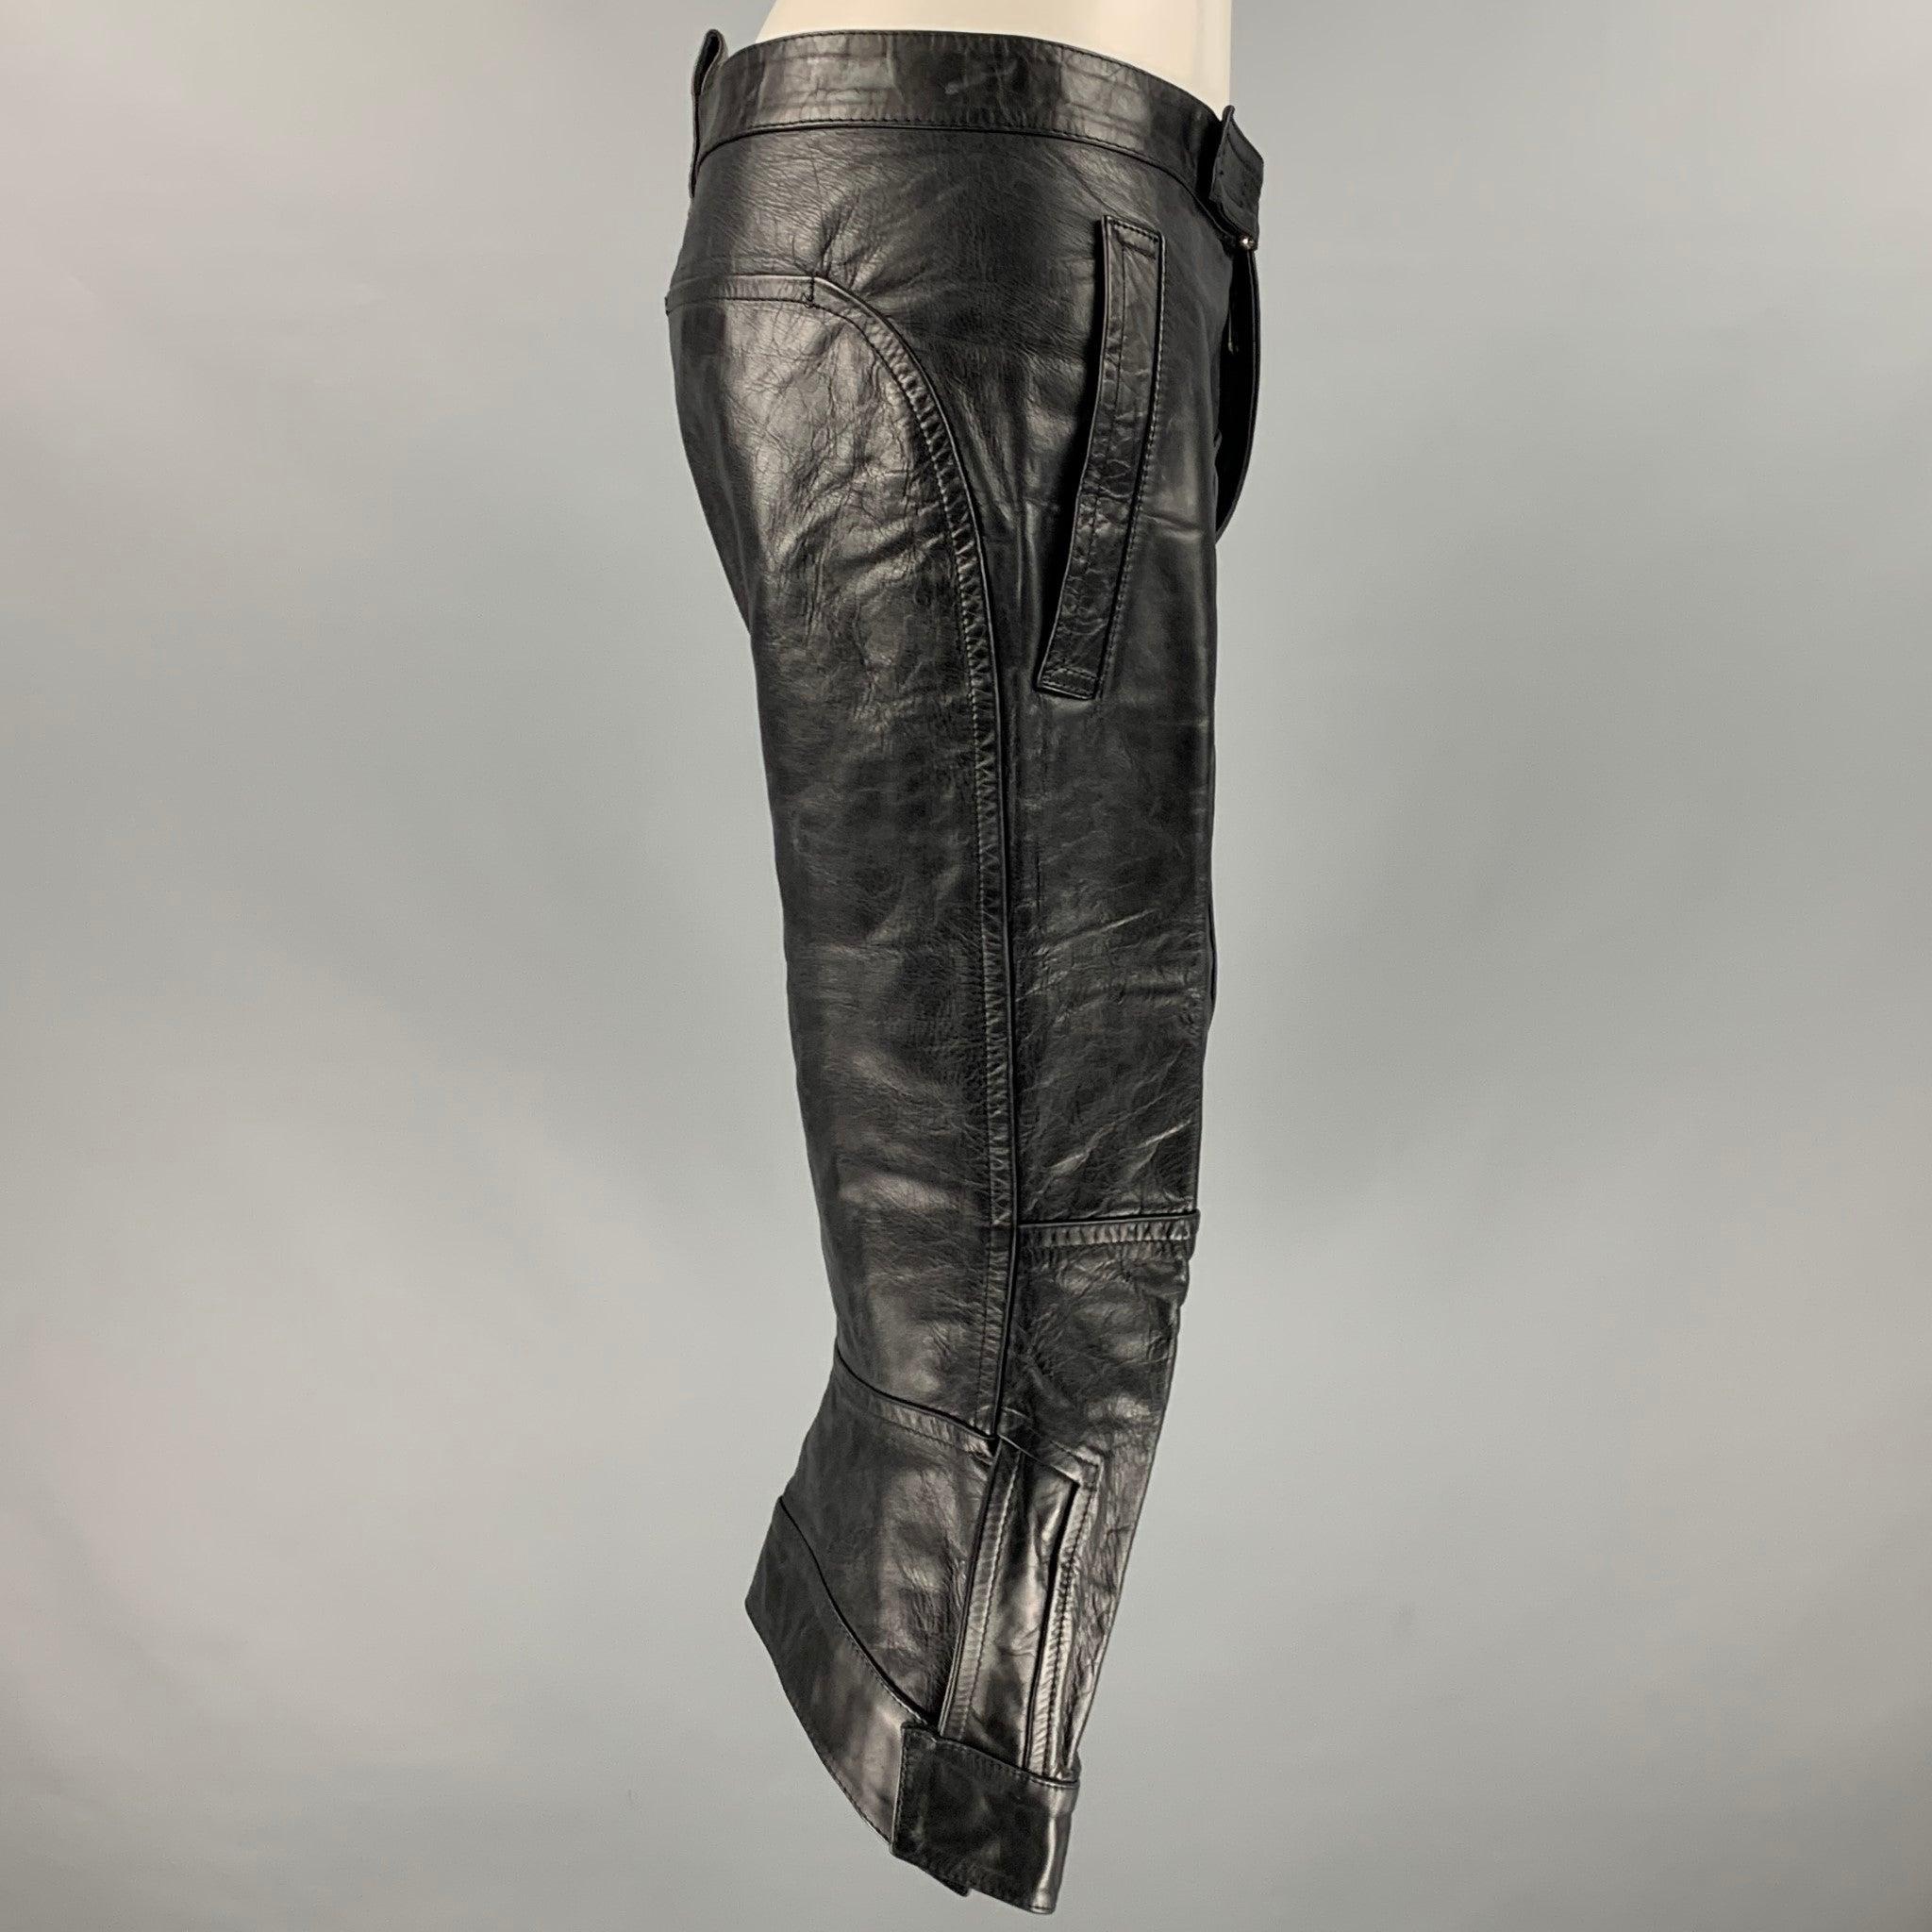 DSQUARED2 Shorts
aus schwarzem Leder, mit langem Schnitt, selbstschließenden Taschen und einem Reißverschluss. Made in Italy.New With Tags. 

Markiert:   46 

Abmessungen: 
  Taille: 30 Zoll Anstieg: 8 Zoll Innennaht: 15,5 Zoll 
  
  
 
Referenz: